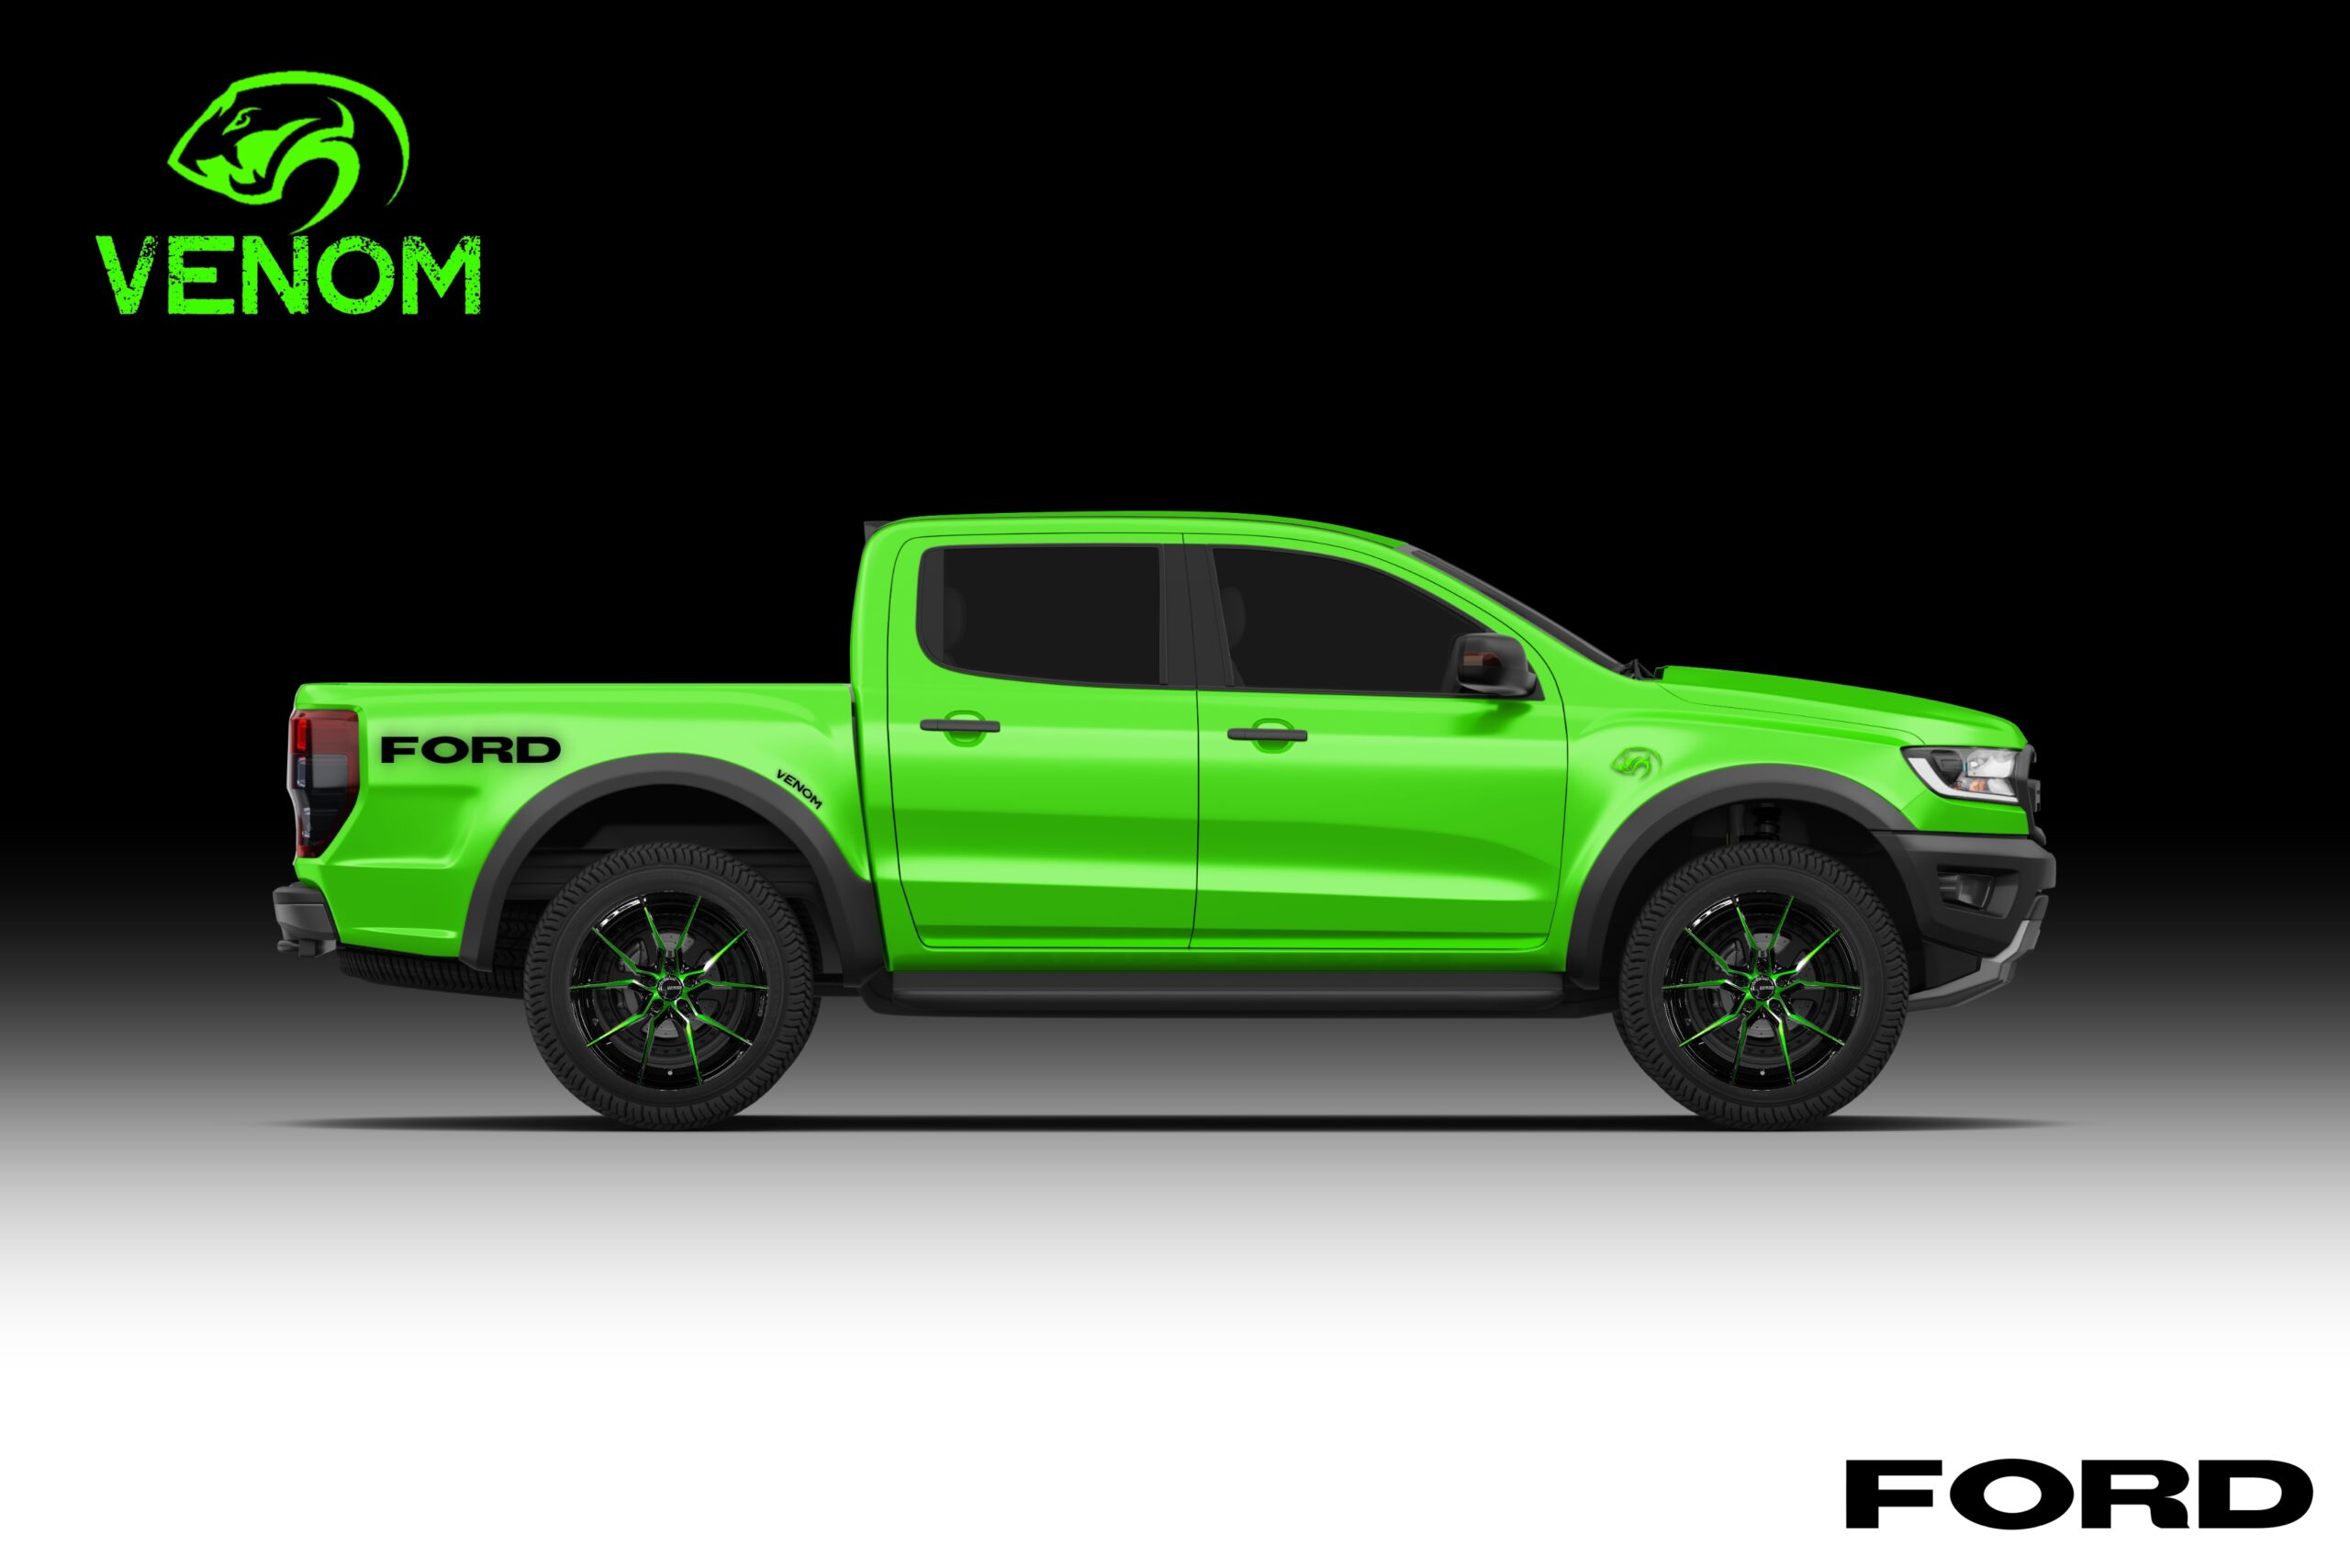 Ford Venom Green